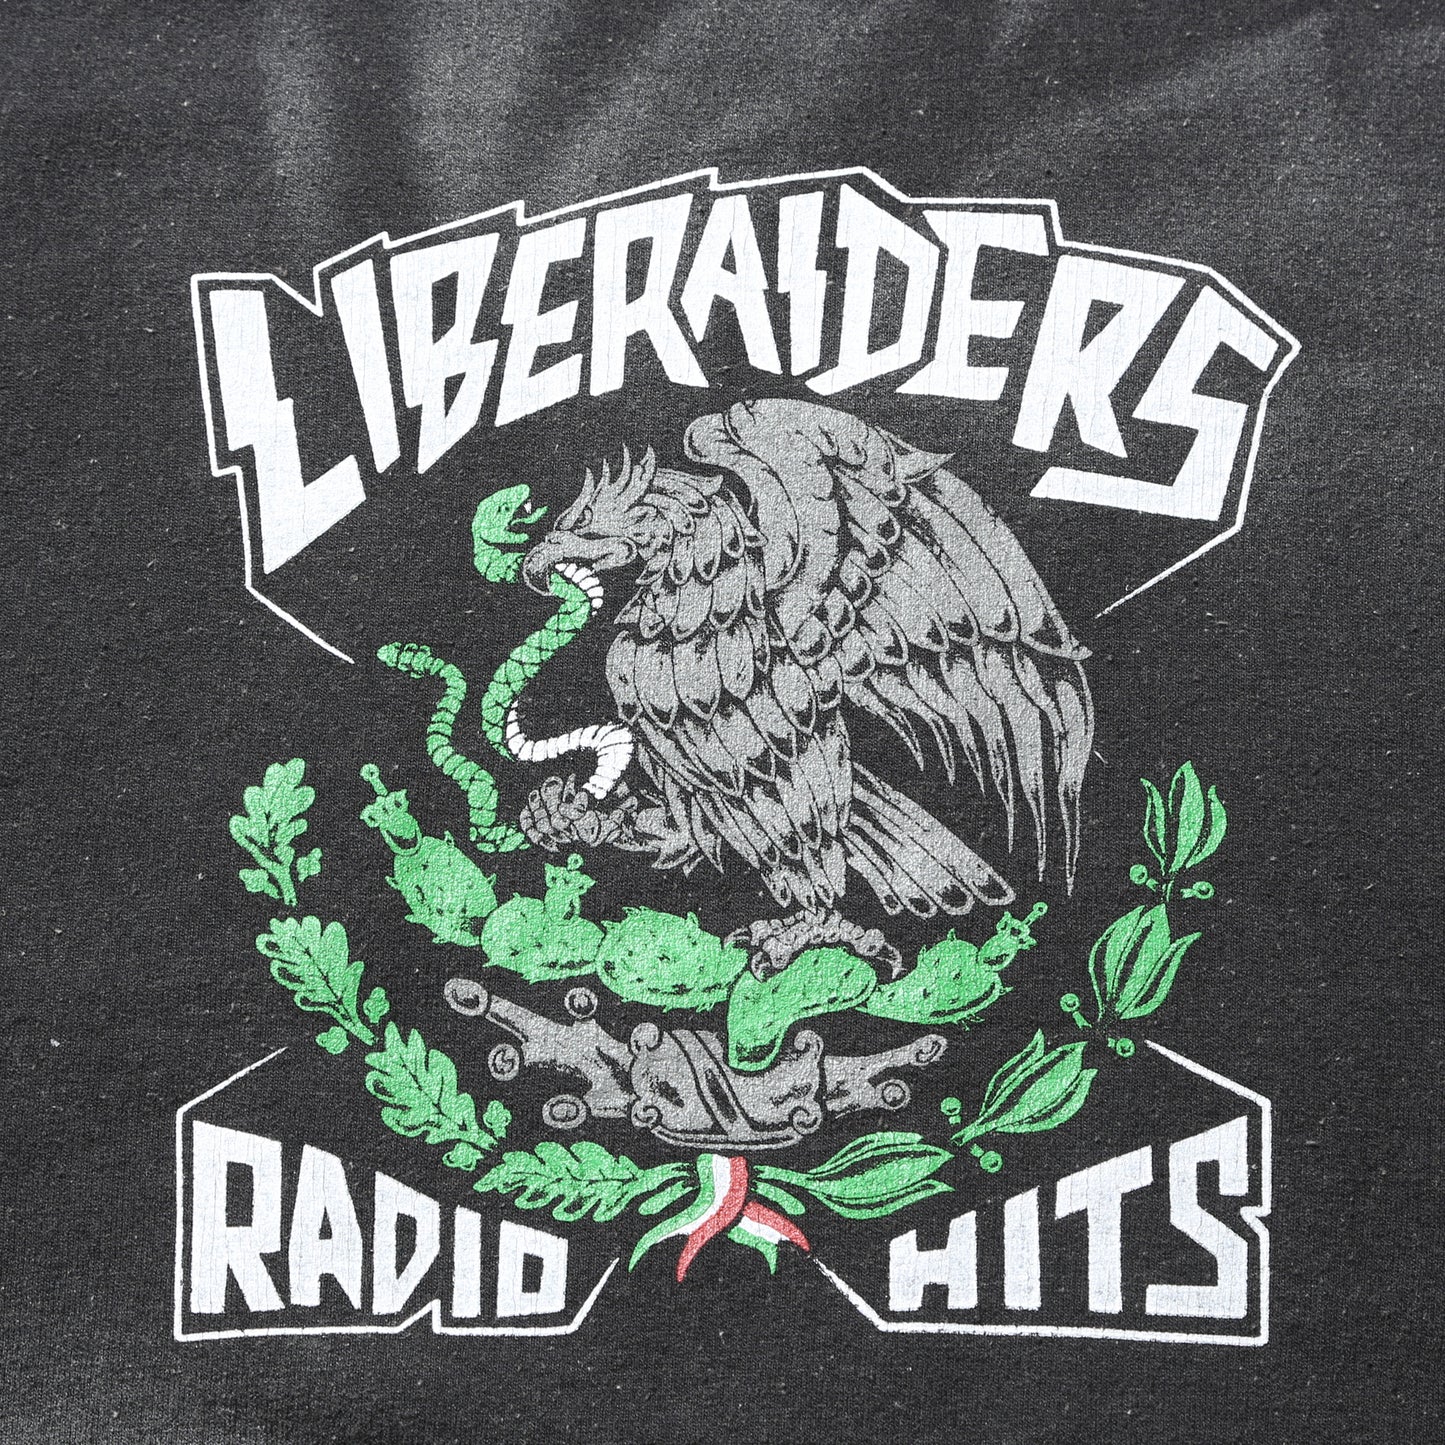 Liberaiders 23 /RADIO HITS VINTAGE CREWNECK 75317